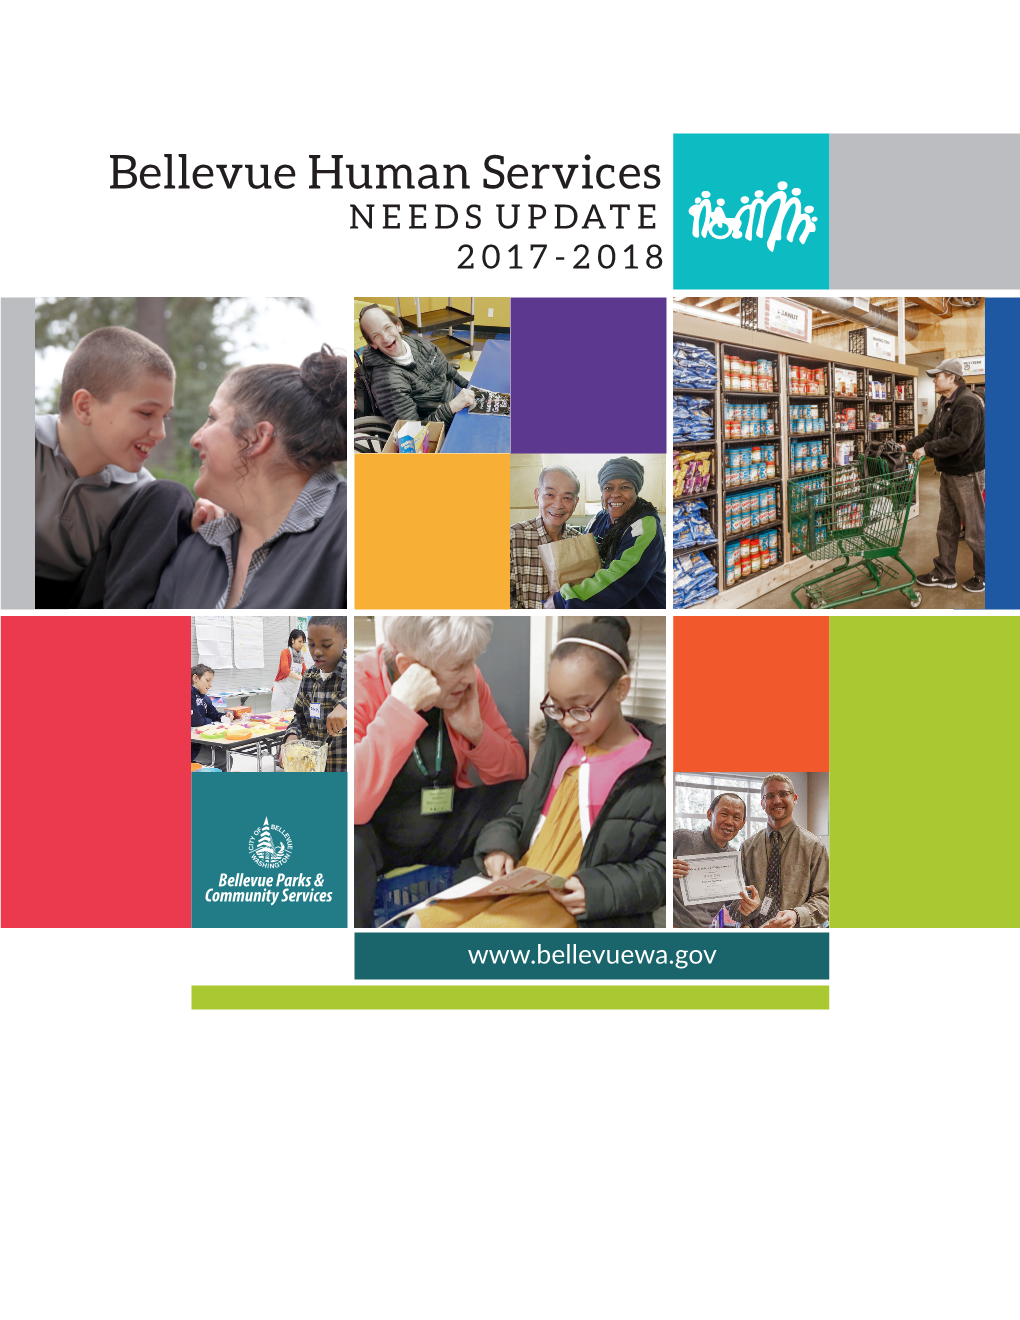 Bellevue Human Services NEEDS UPDATE 2017-2018